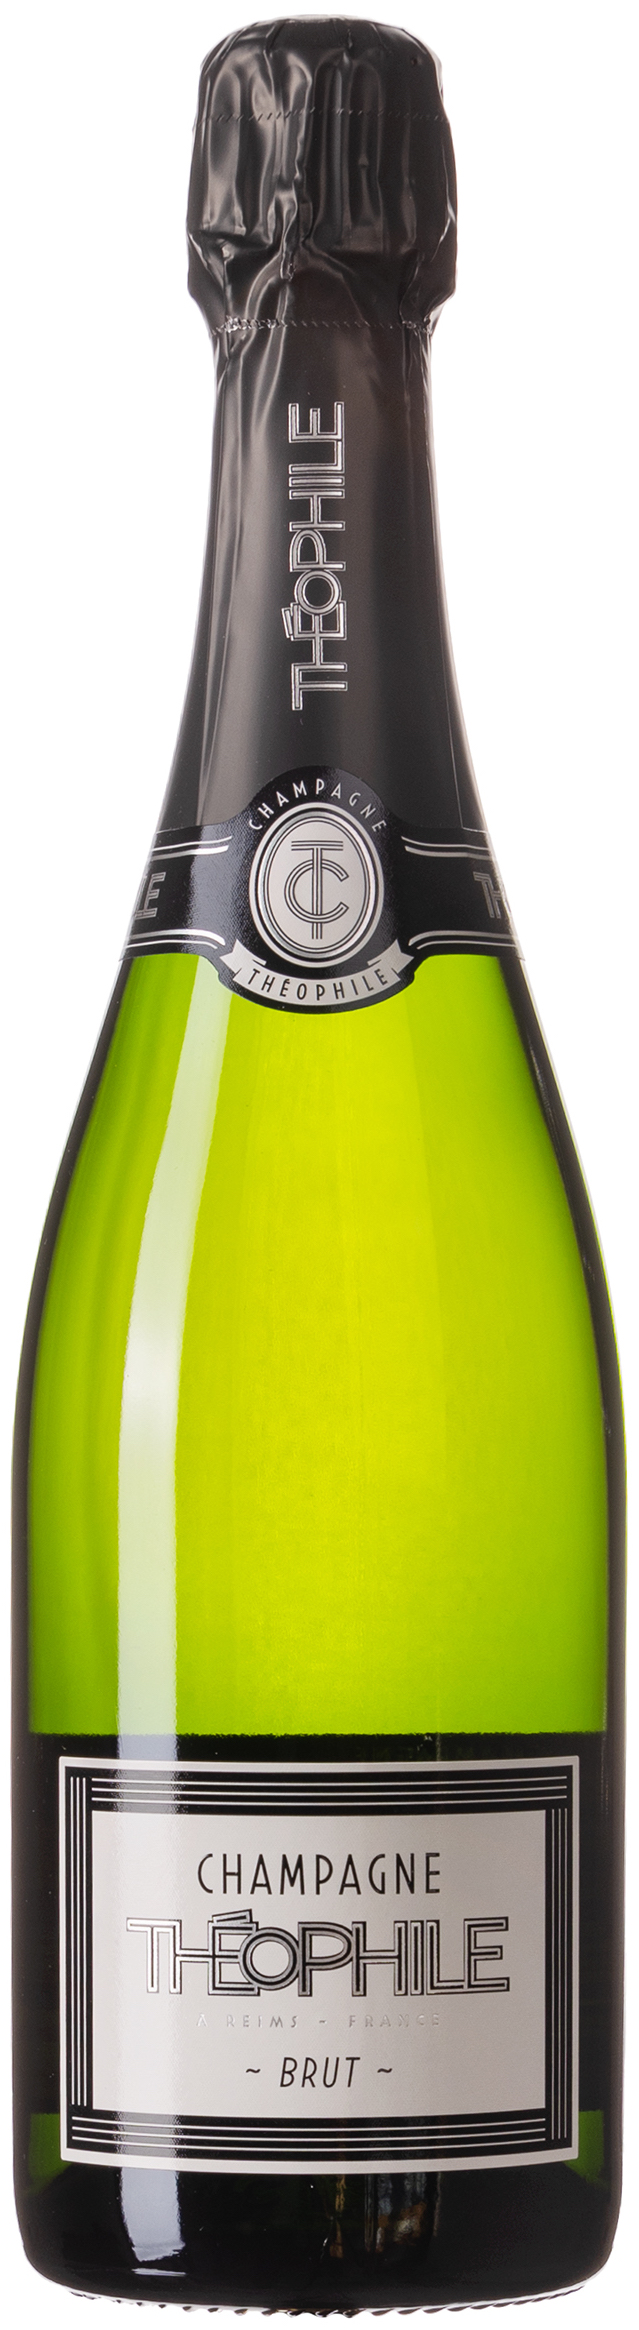 Theophile Brut Champagner 12% vol. 0,75L